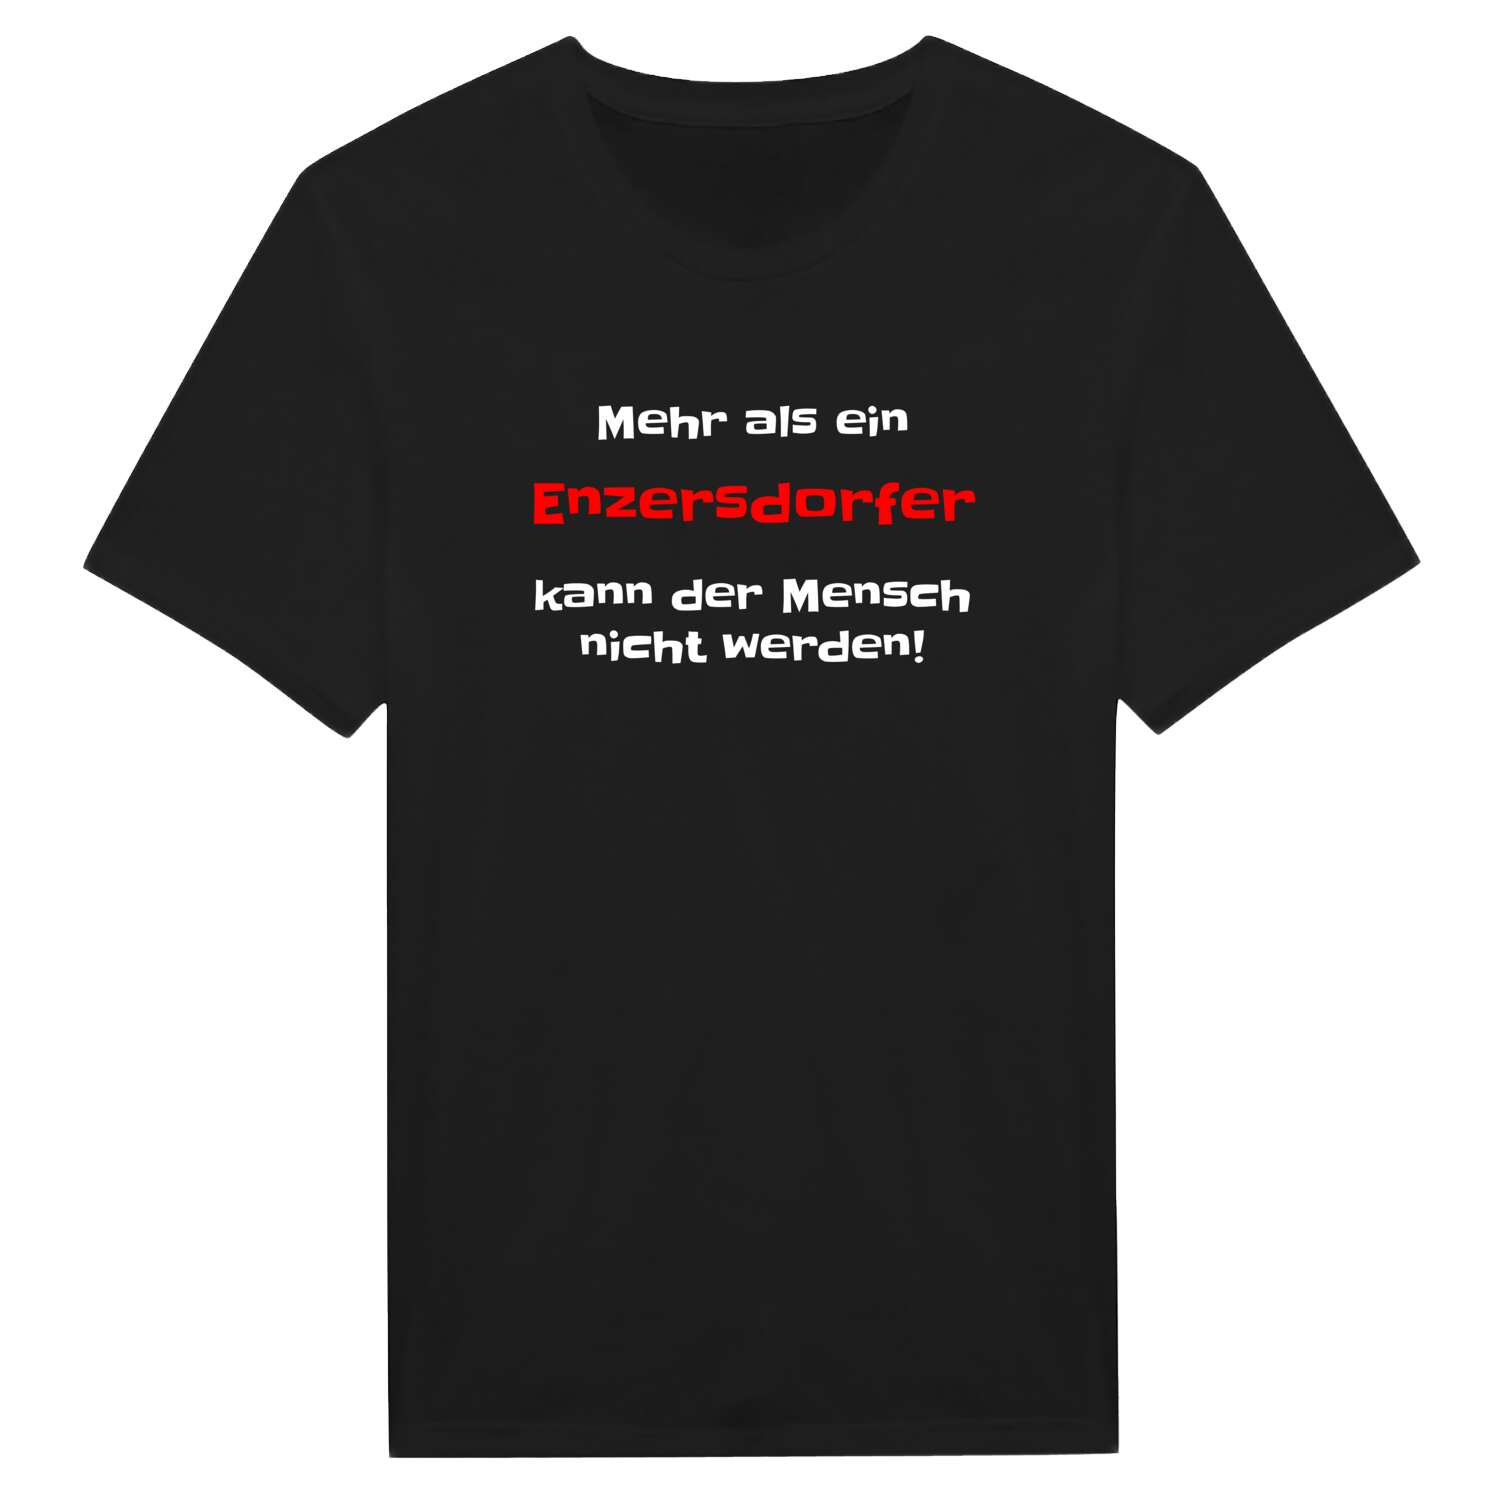 Enzersdorf T-Shirt »Mehr als ein«